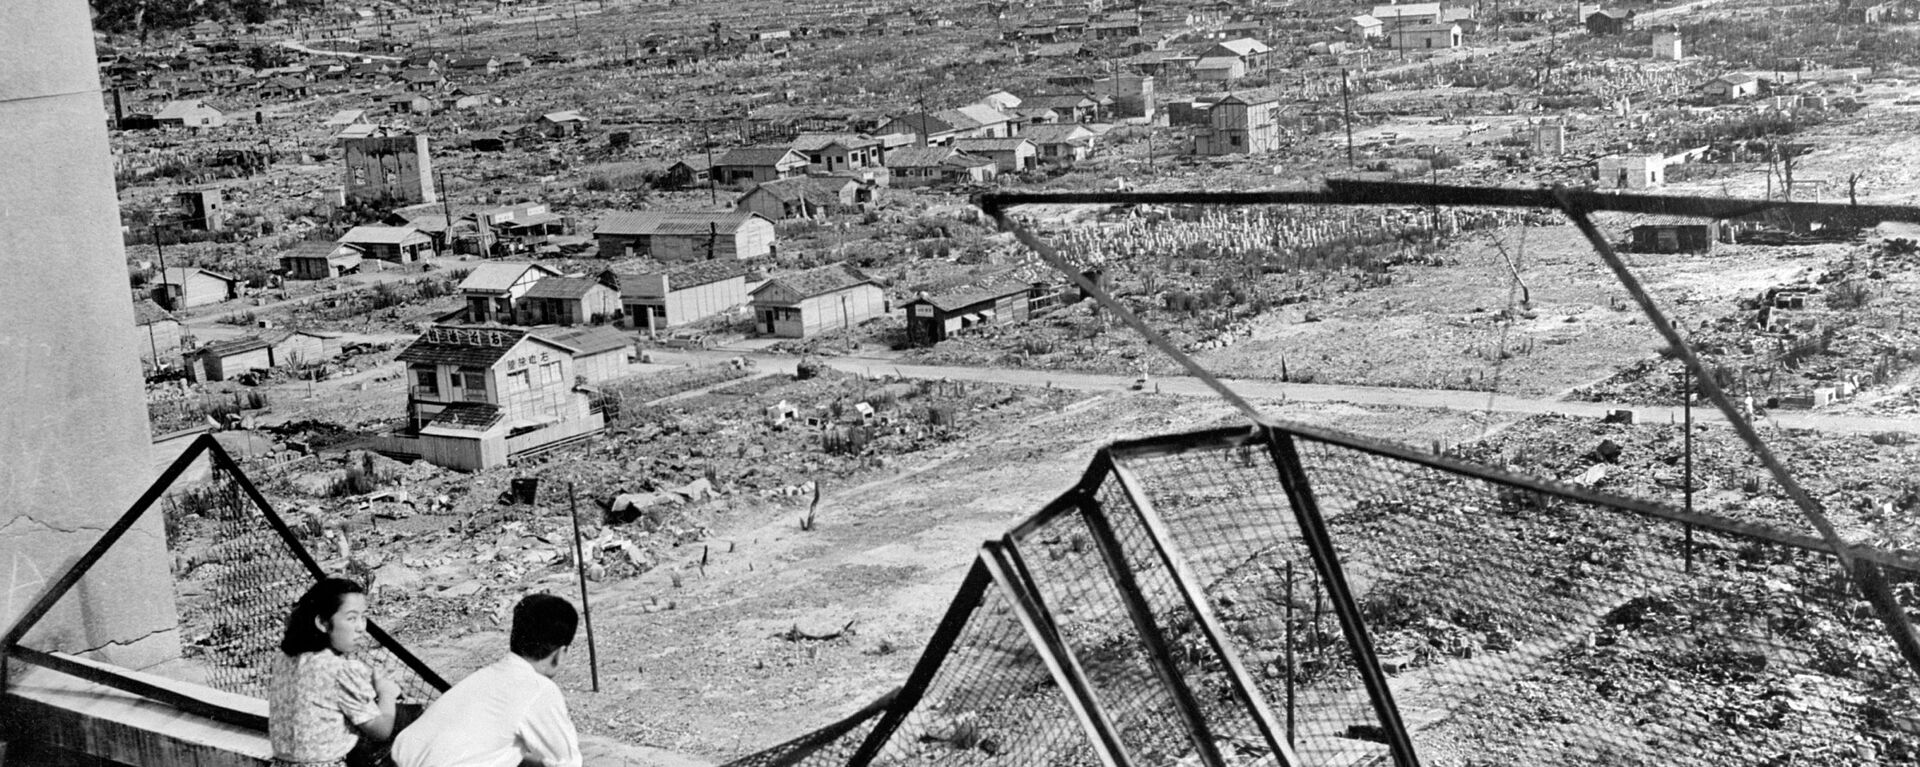 Quang cảnh thành phố Hiroshima bị phá hủy sau vụ ném bom nguyên tử - Sputnik Việt Nam, 1920, 06.08.2020